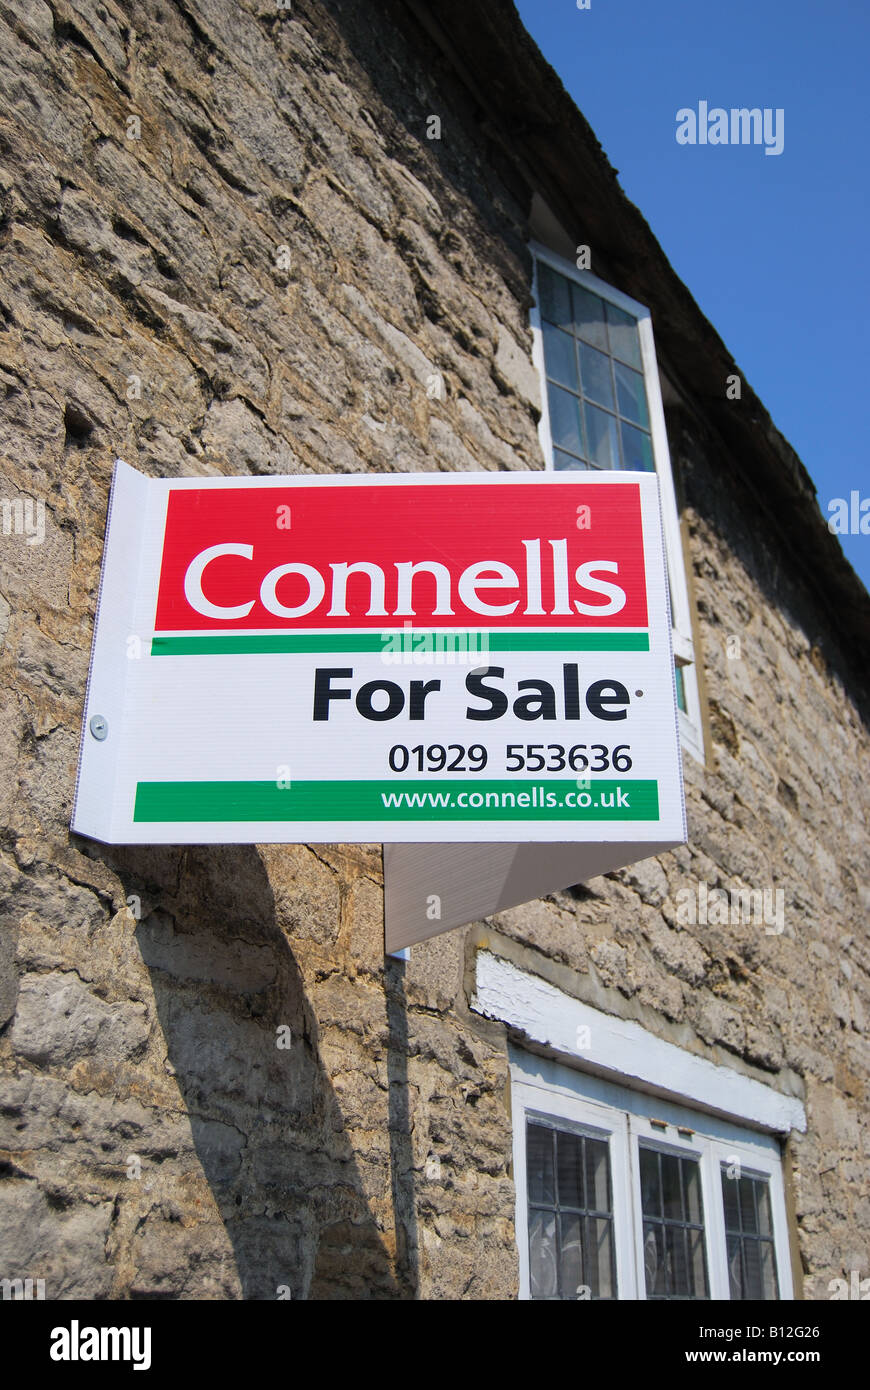 Maison à vendre signe, Corfe Castle, Dorset, Angleterre, Royaume-Uni Banque D'Images